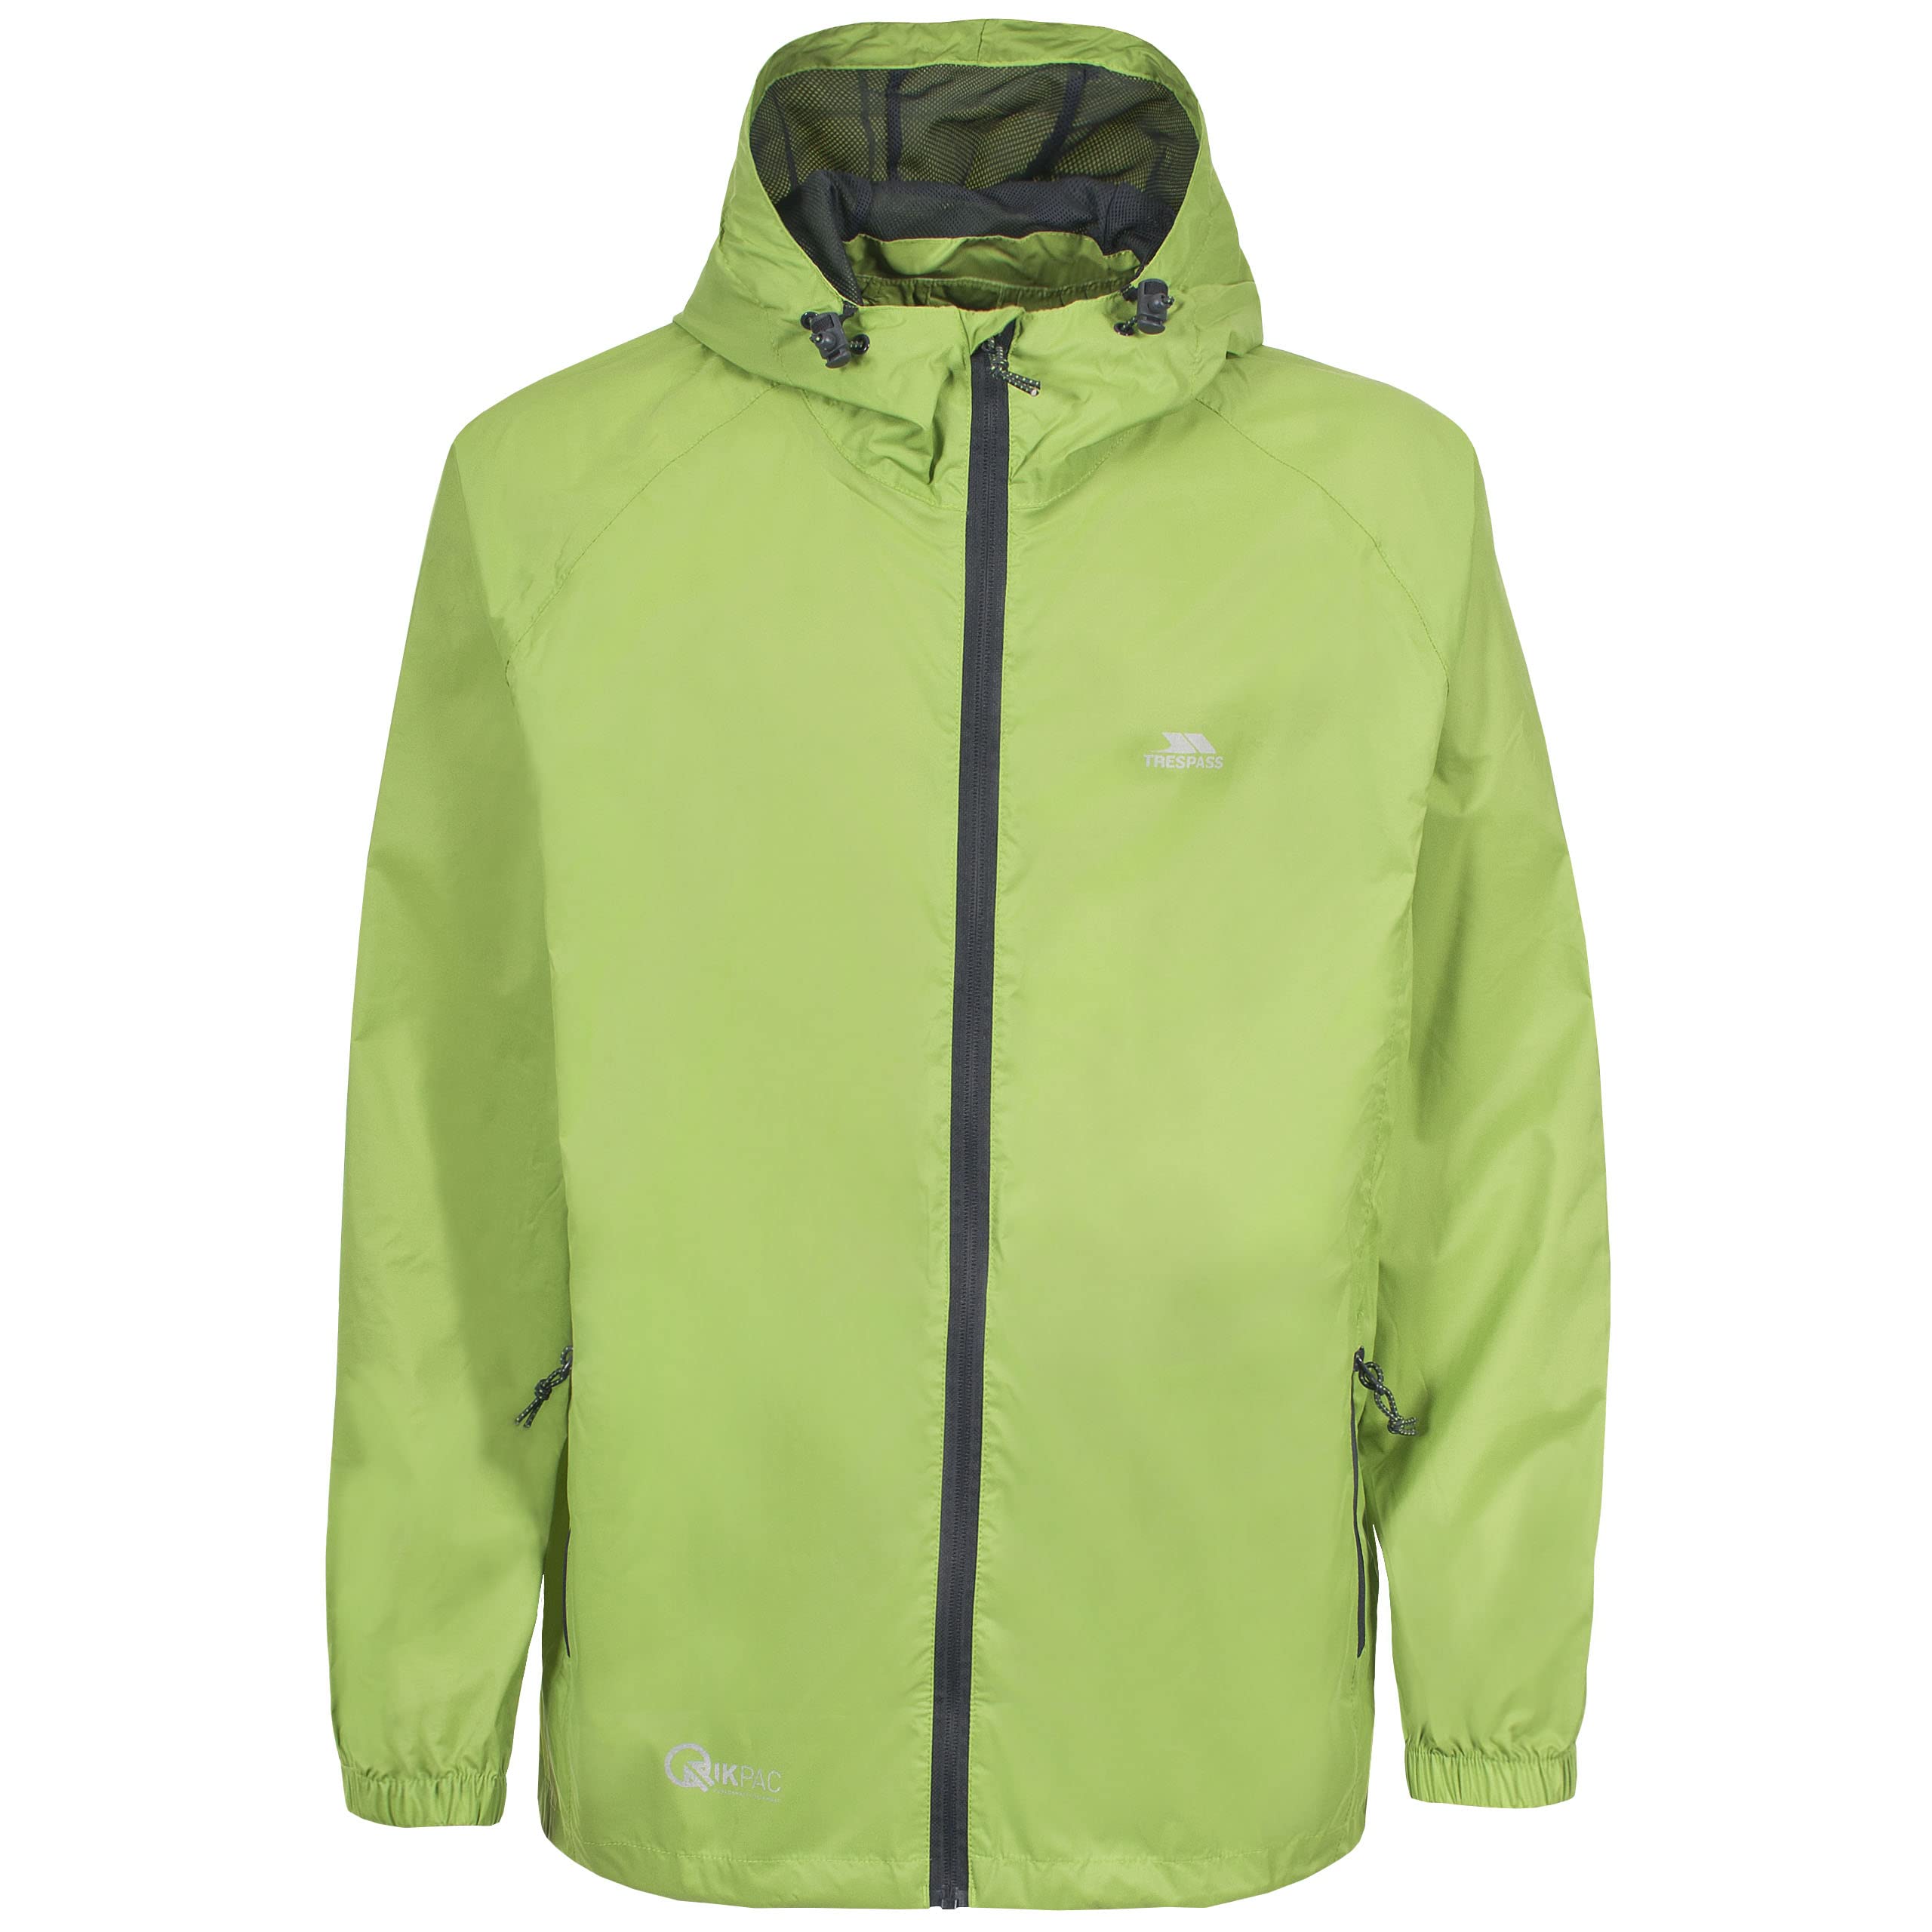 Trespass Unisex Erwachsene Qikpac Jacket Kompakt Zusammenrollbare Wasserdichte Regenjacke, Grün (Leaf), XL